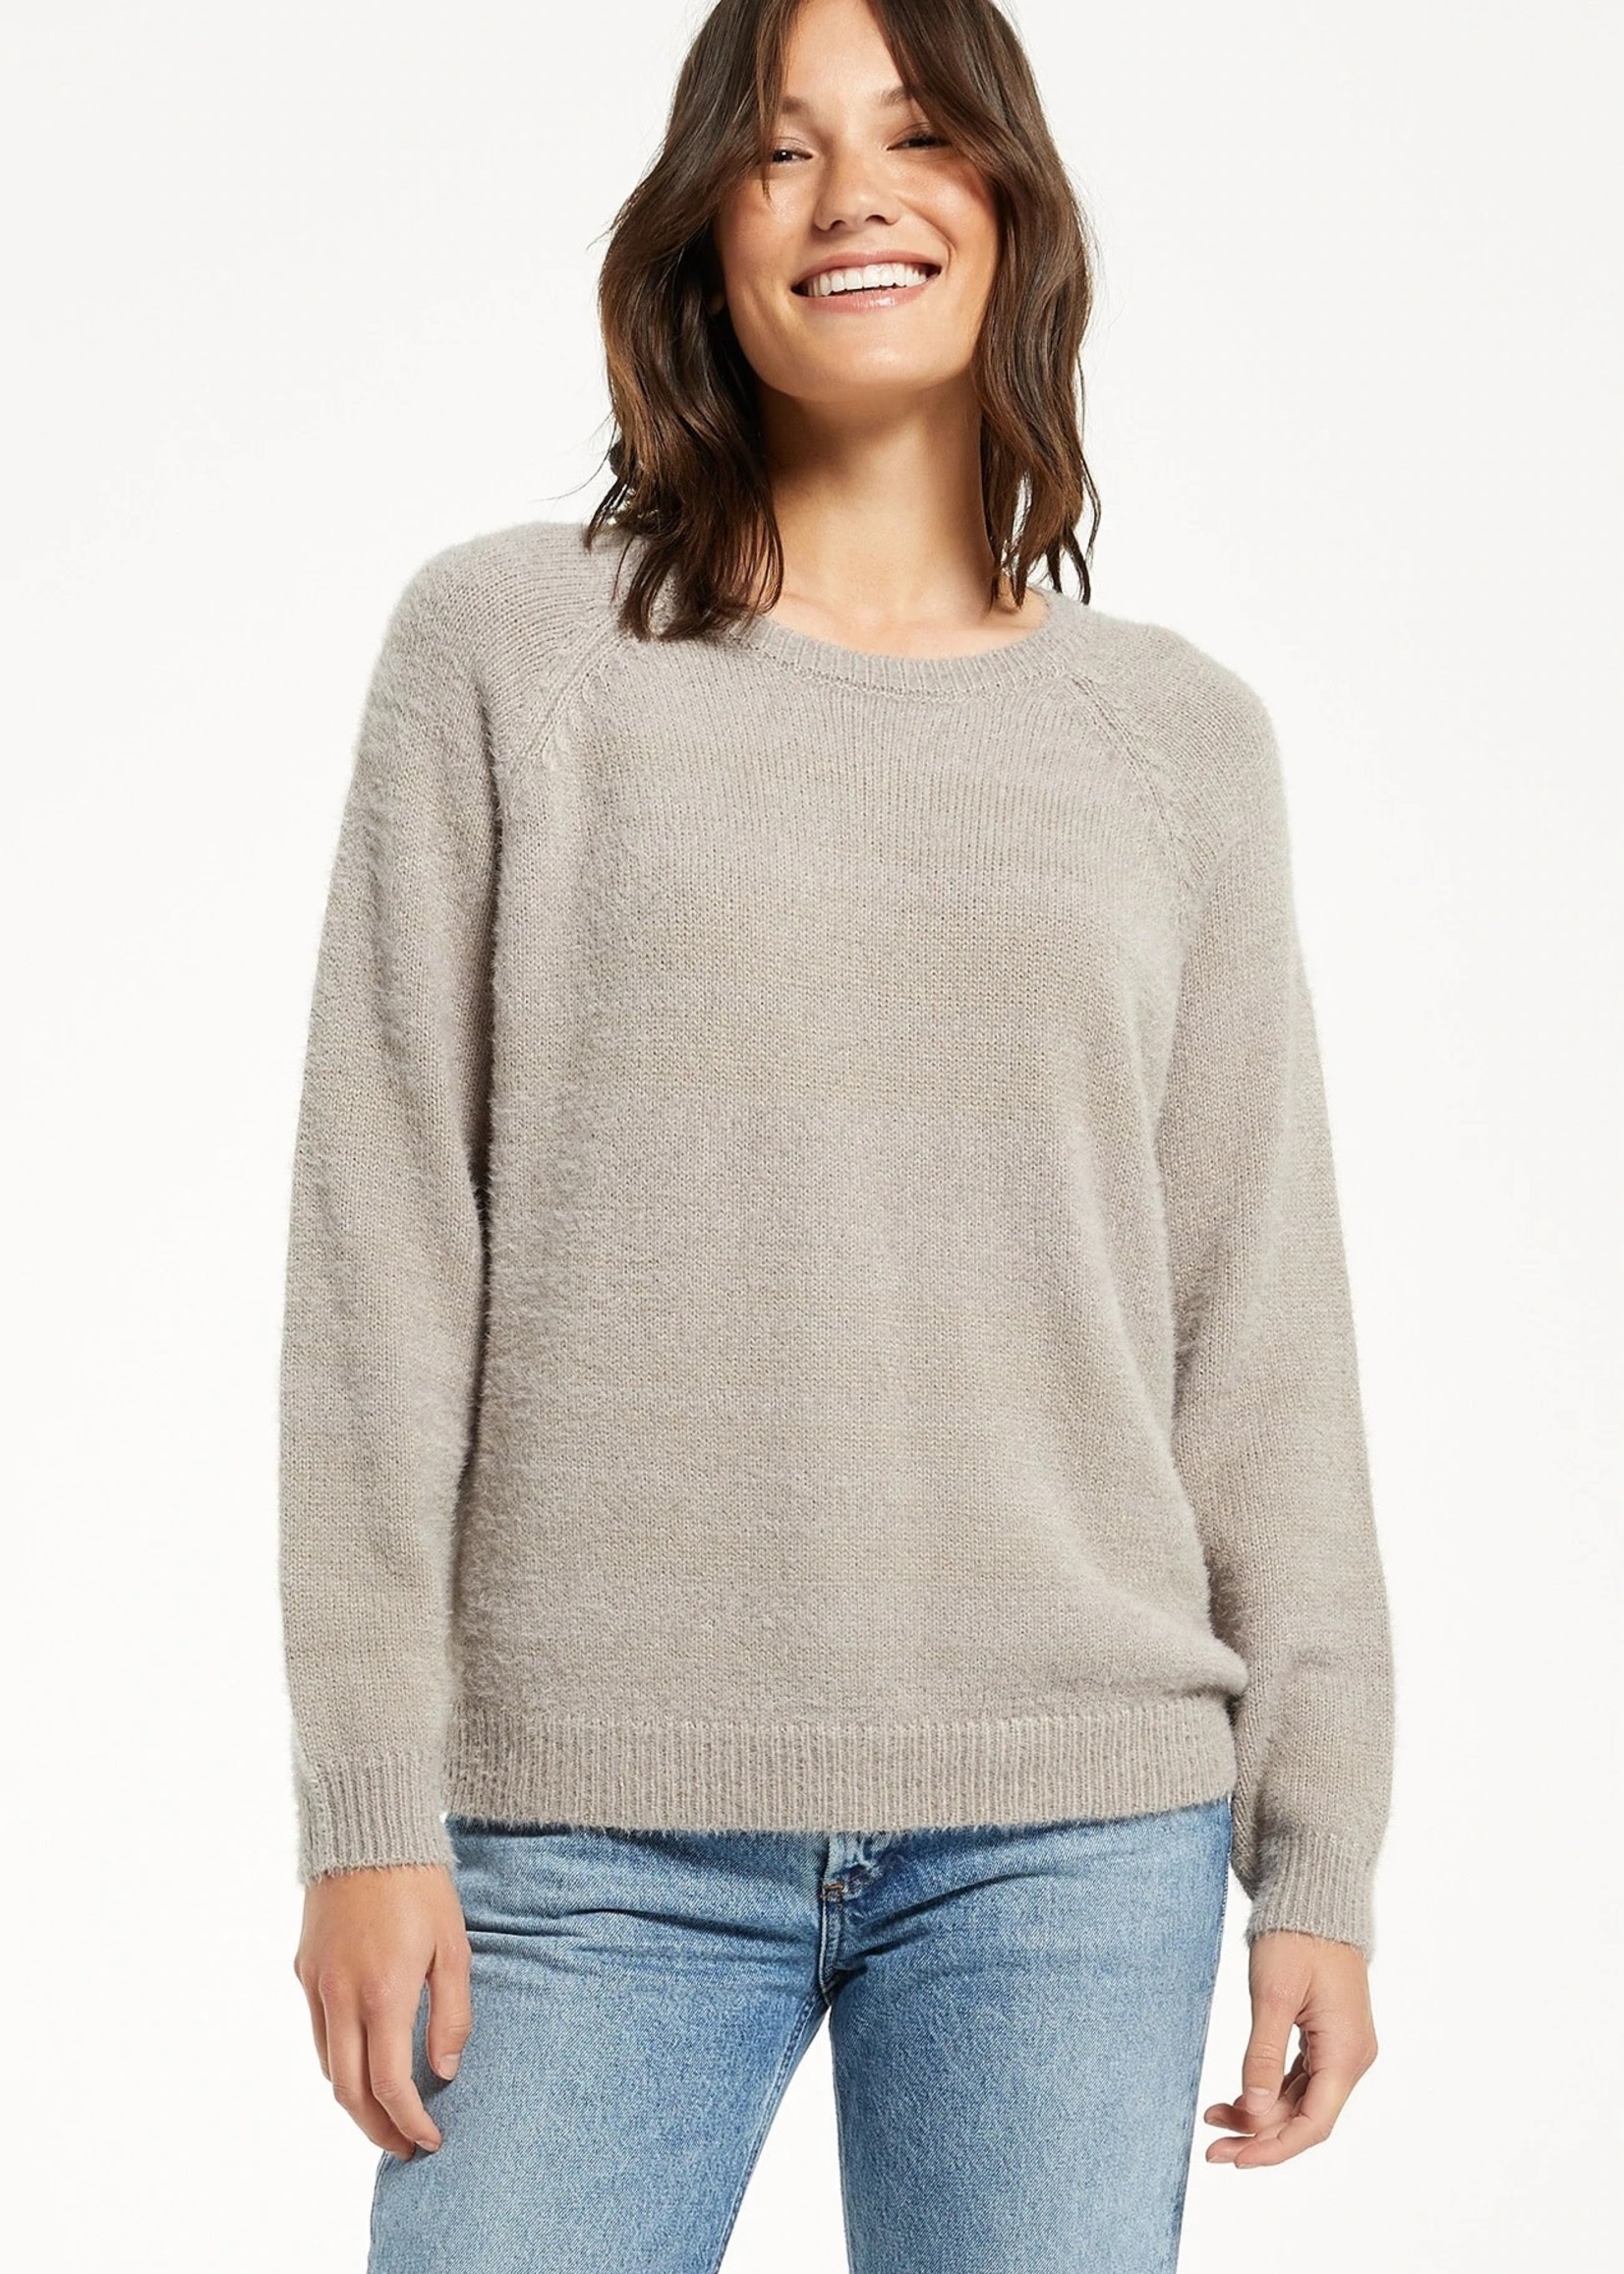 Z supply Alexa Eyelash Sweater*